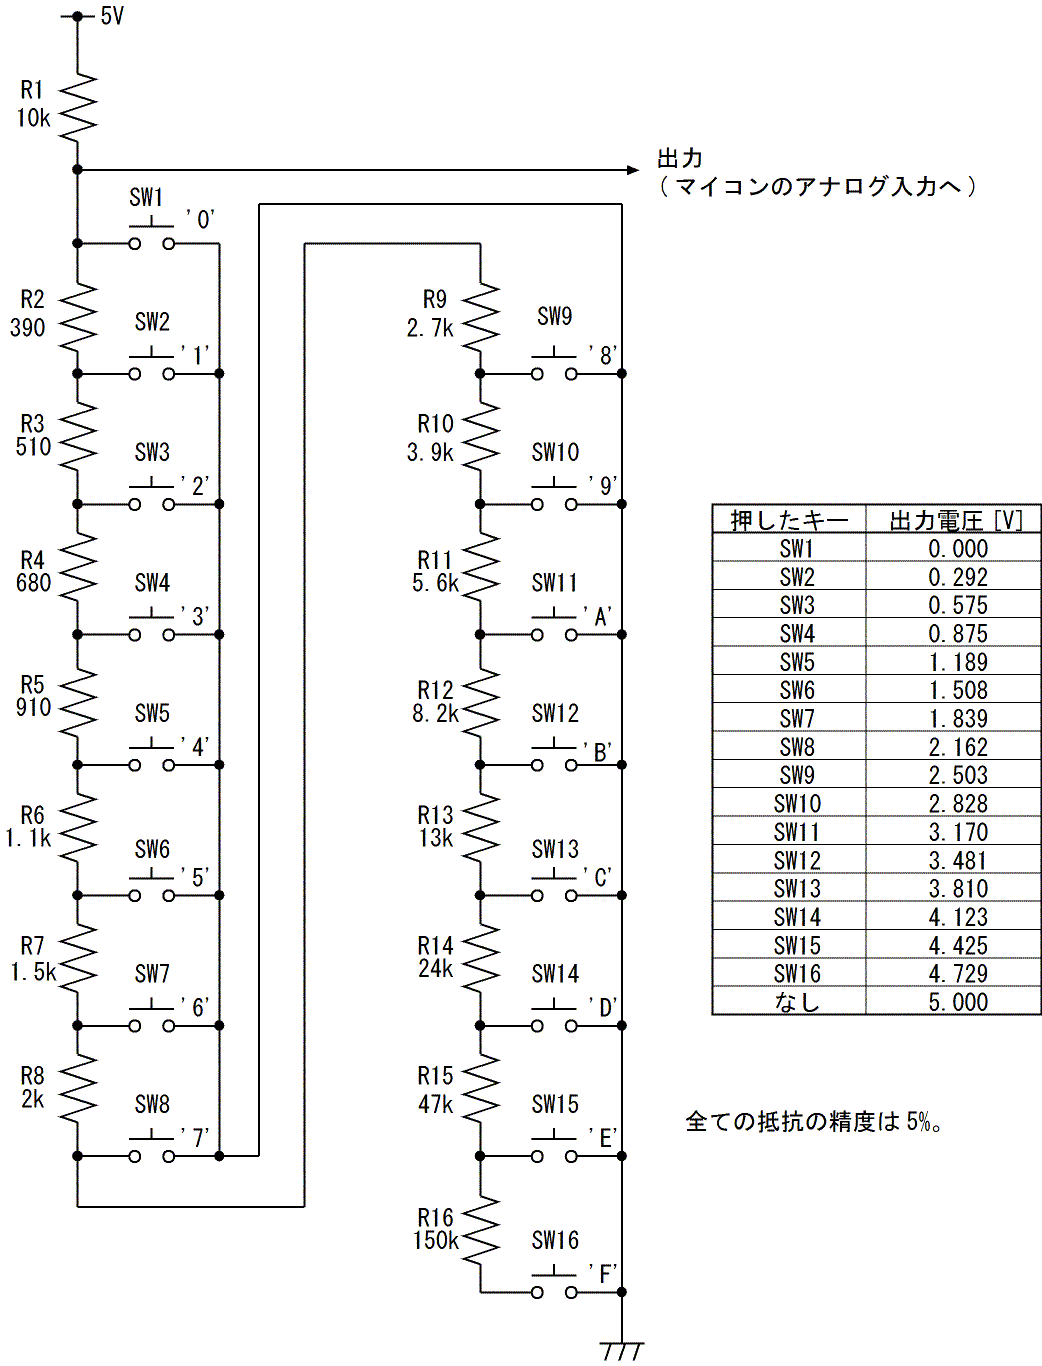 図2、4X4キーパッドの回路図